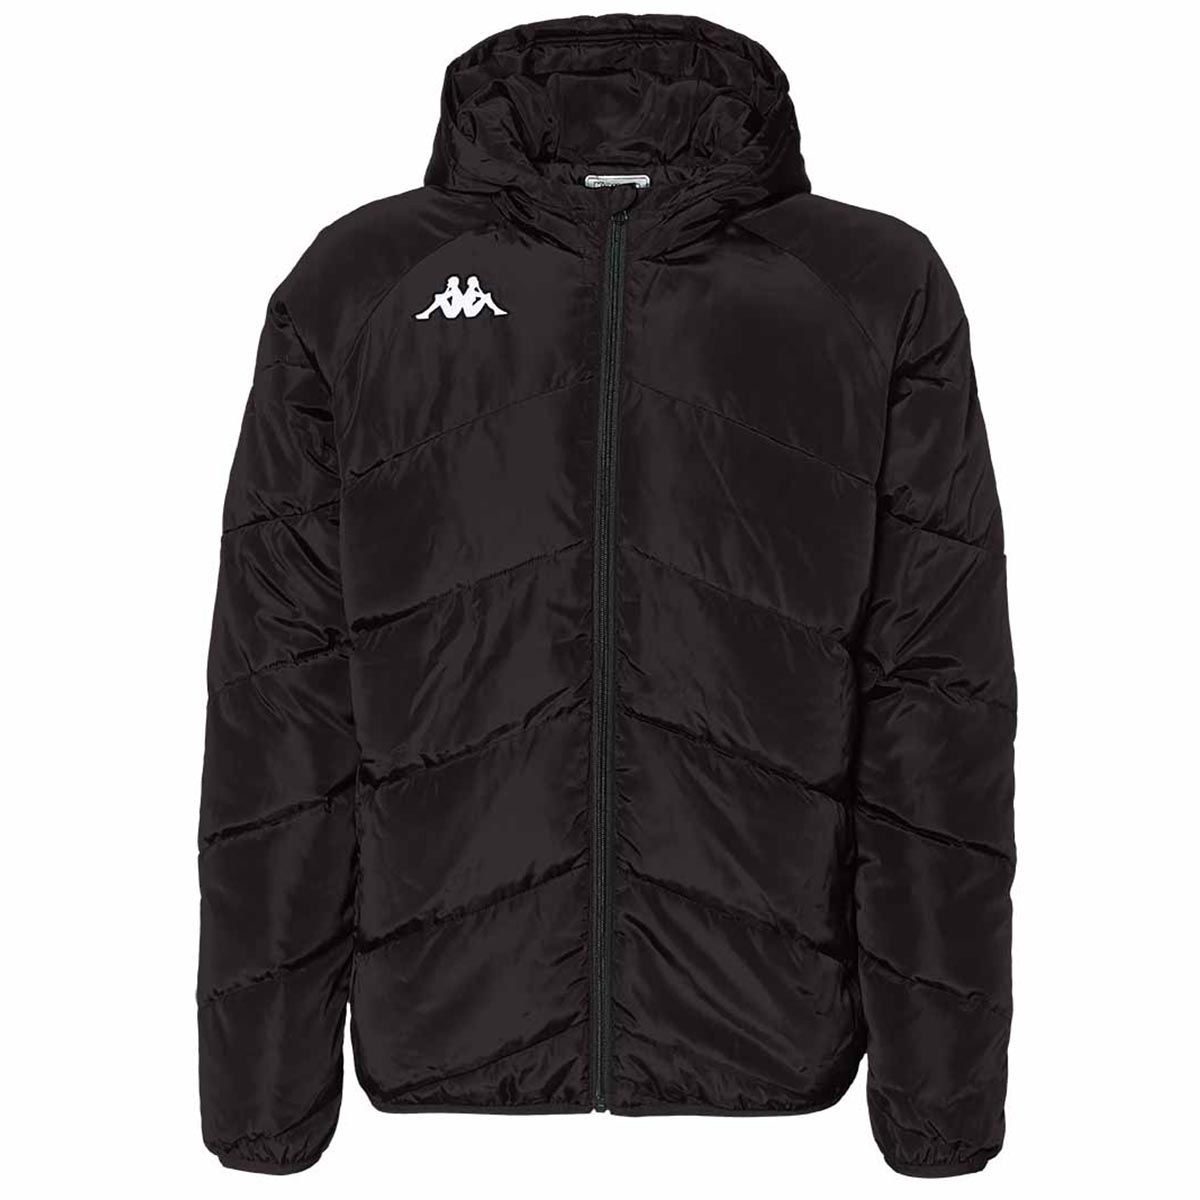 Horndean FC - Bench Jacket - Black